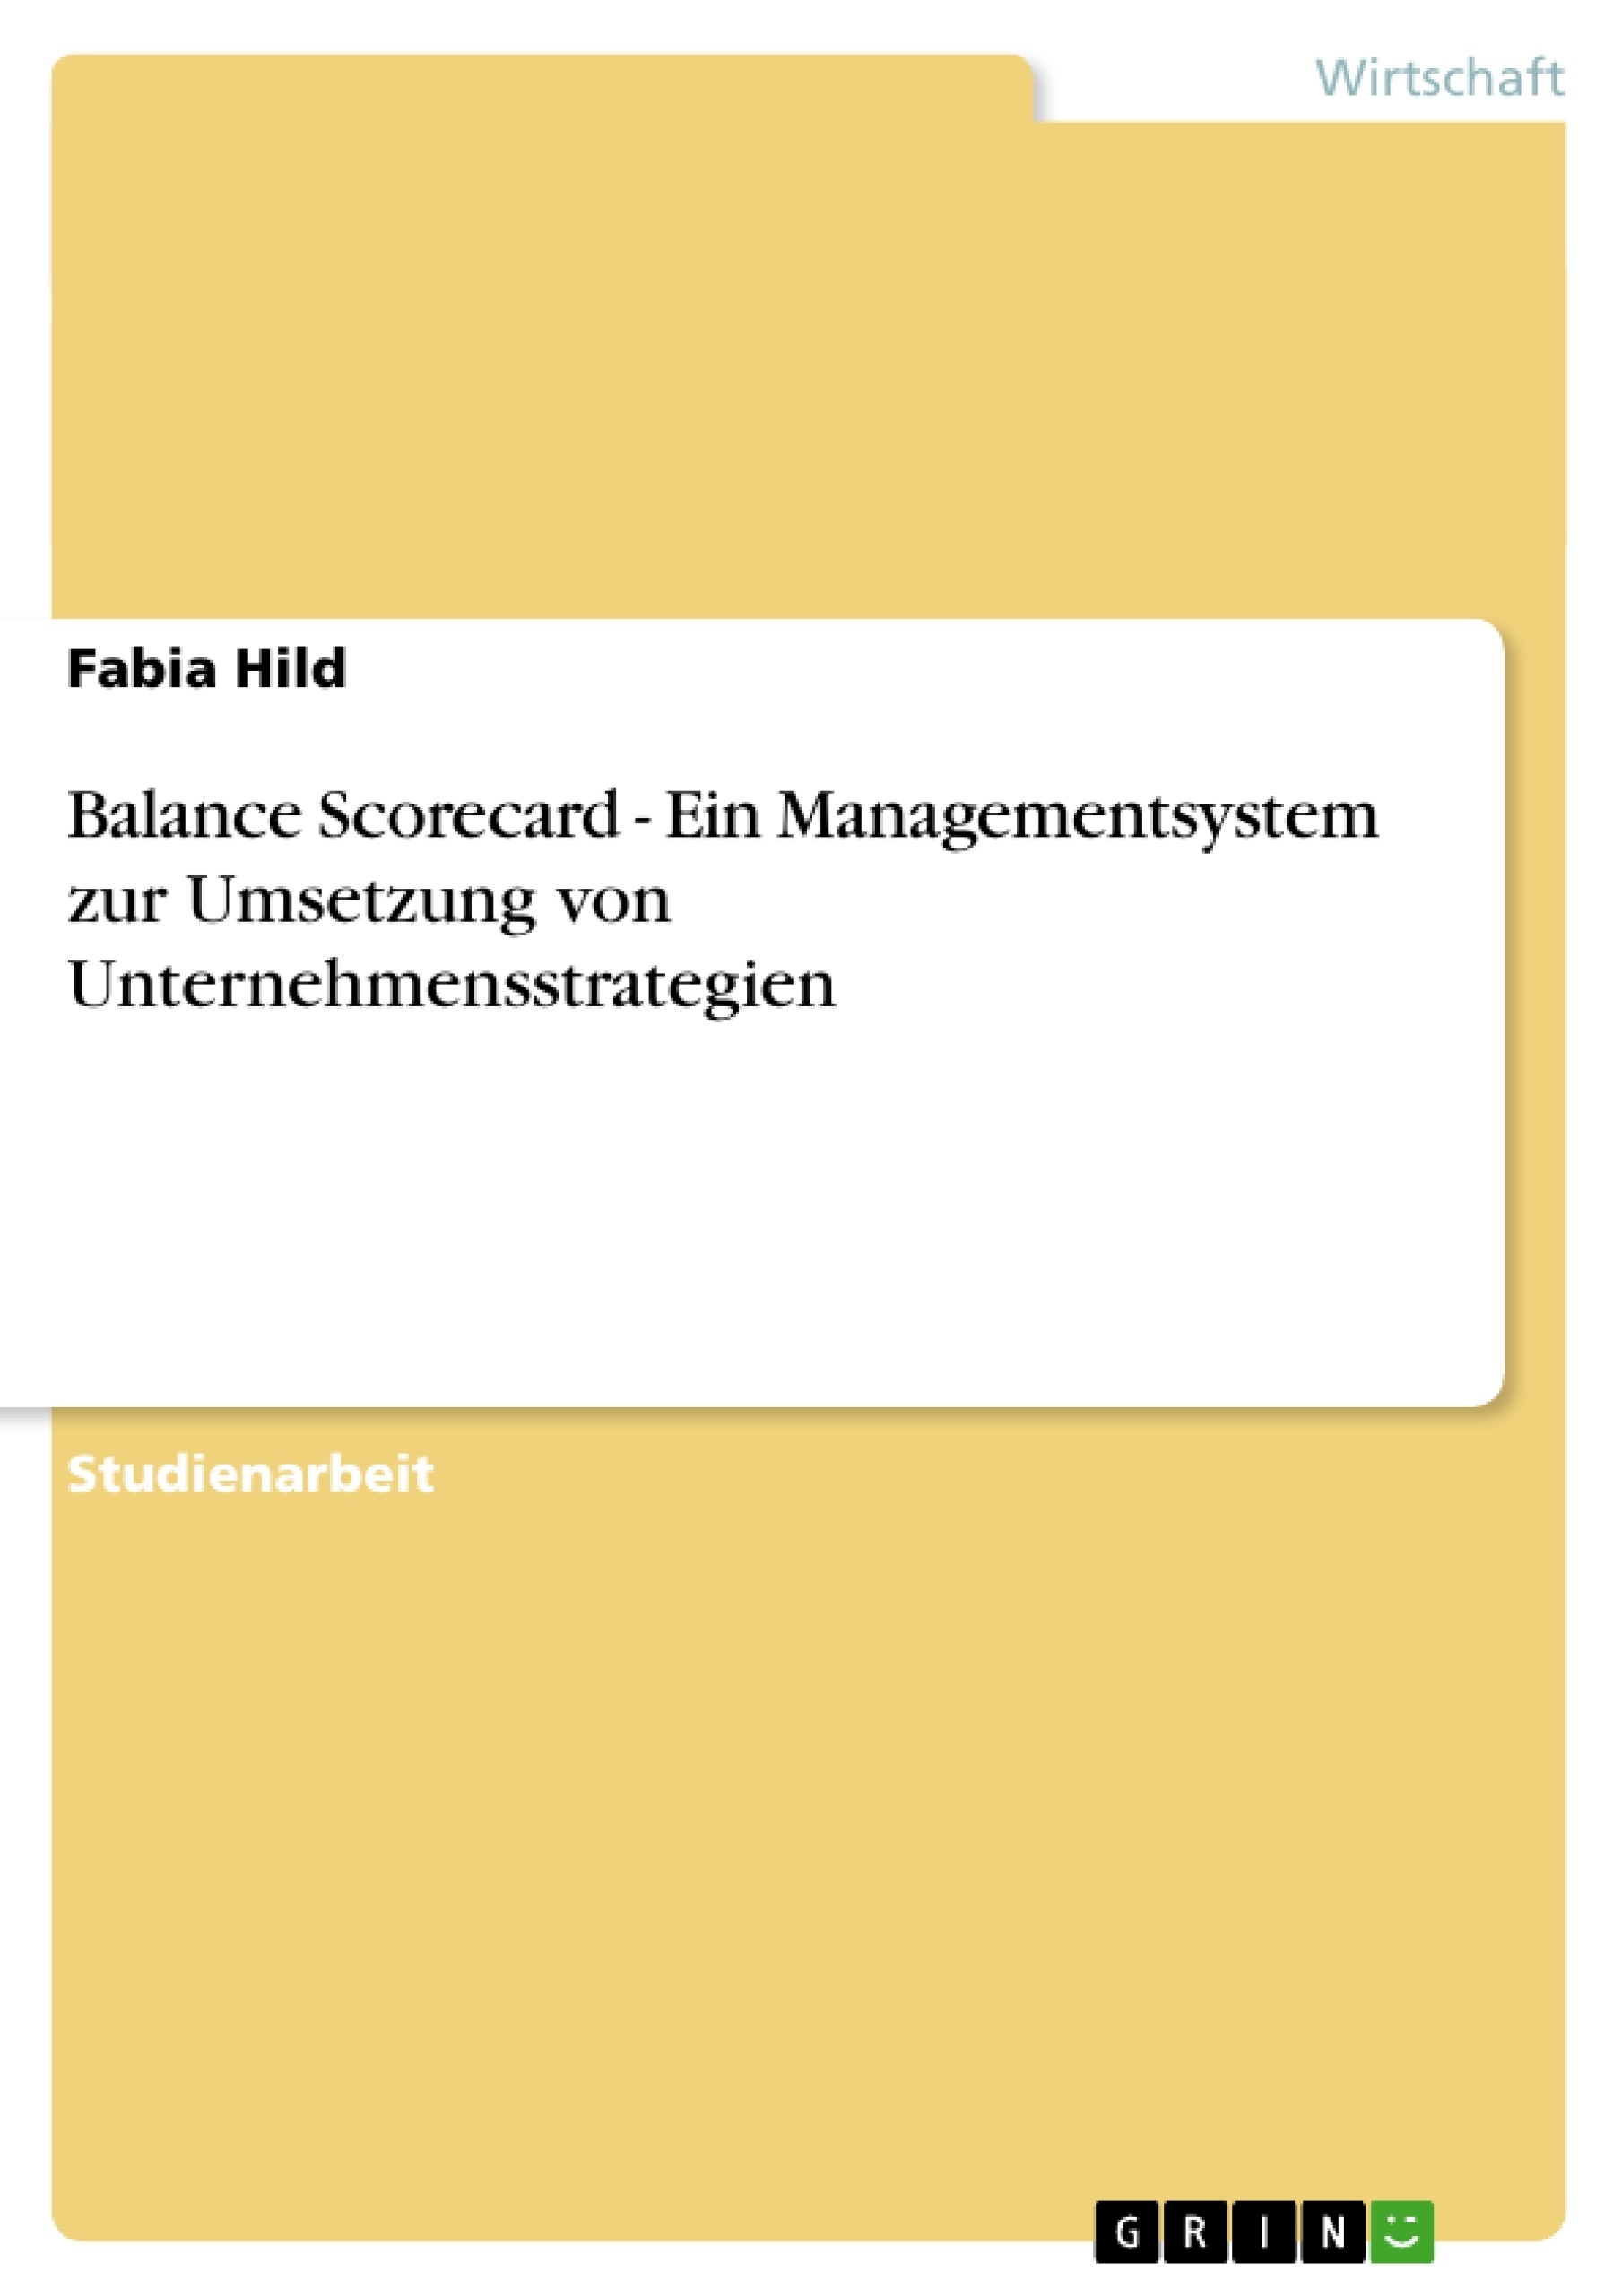 Título: Balance Scorecard - Ein Managementsystem zur Umsetzung von Unternehmensstrategien